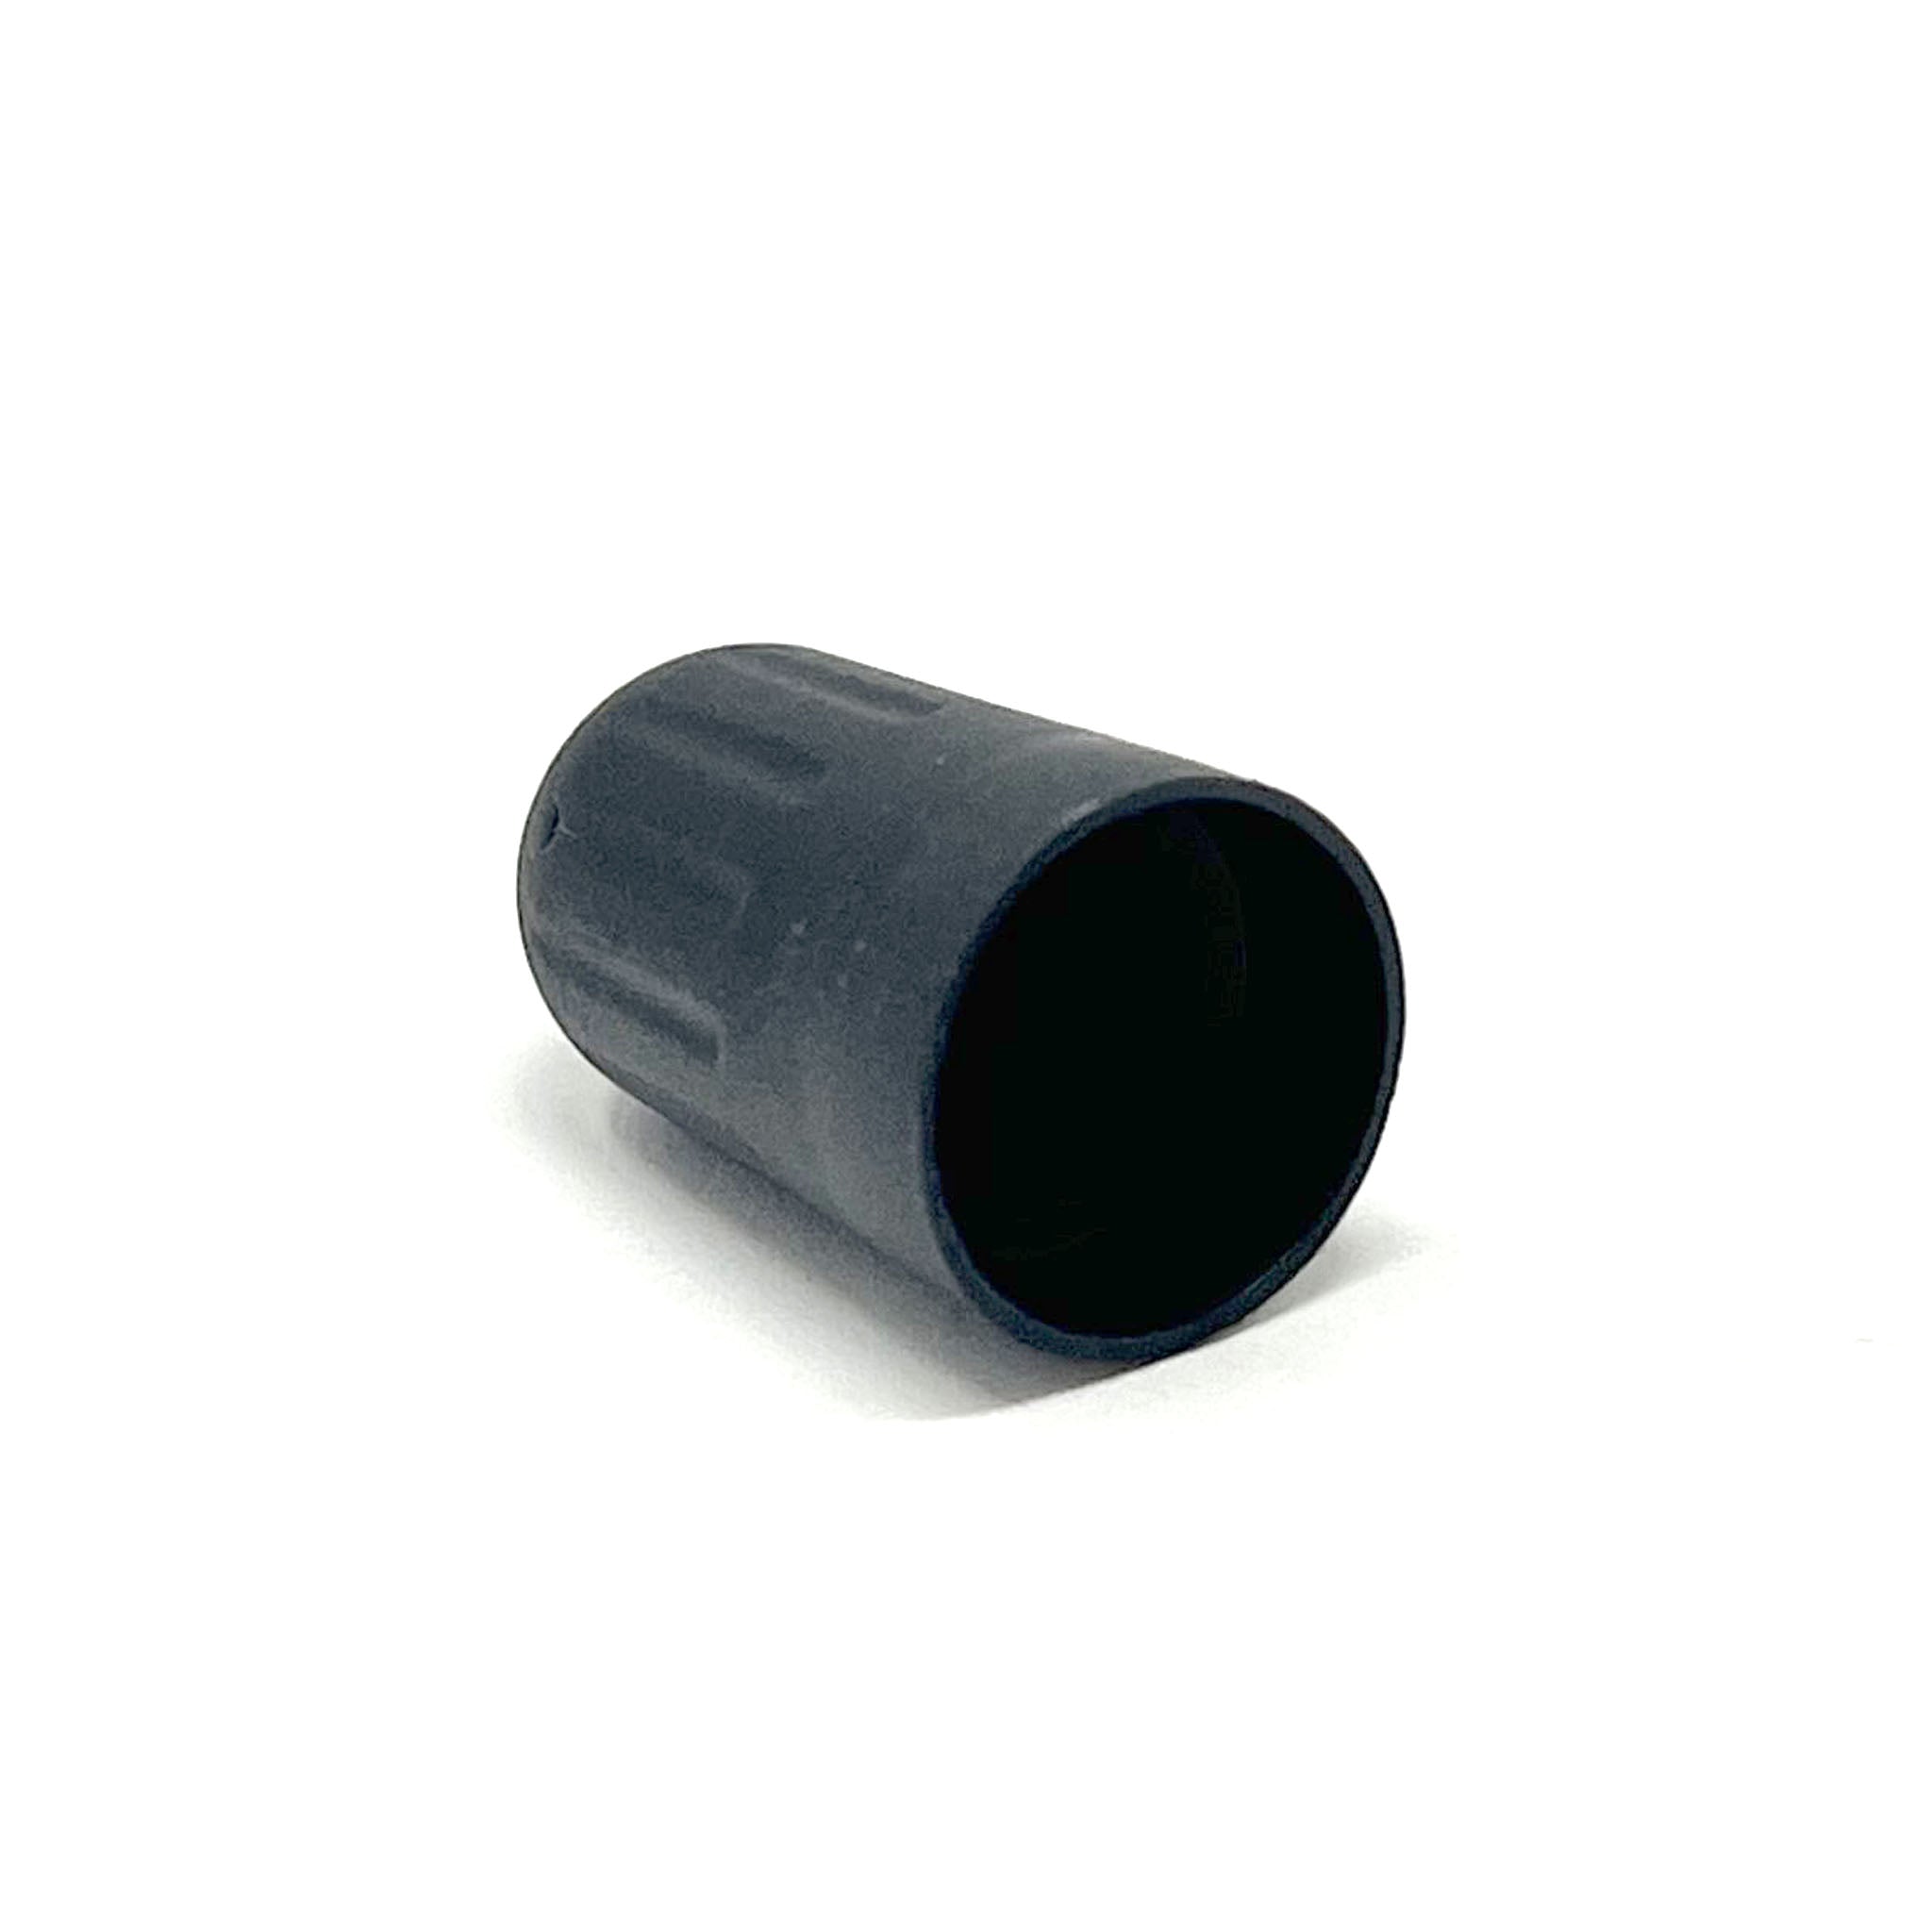 Long Black Plastic TPMS Caps: Long Black Plastic TPMS Caps, 100pcs/Bag| | 17-492L-1|